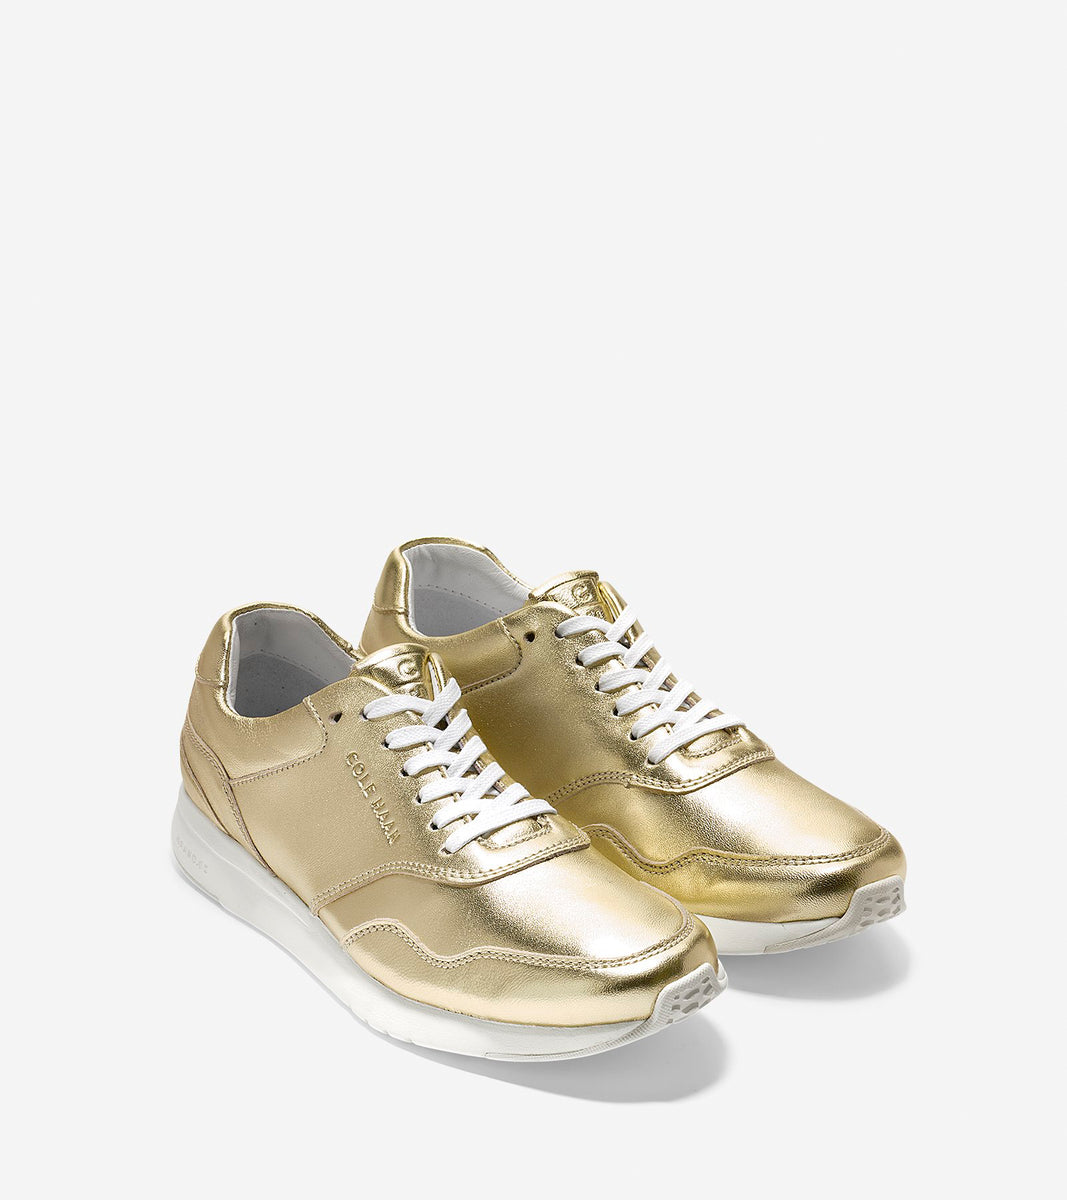 ColeHaan-GrandPrø Running Sneaker-w09780-Metallic Soft Gold